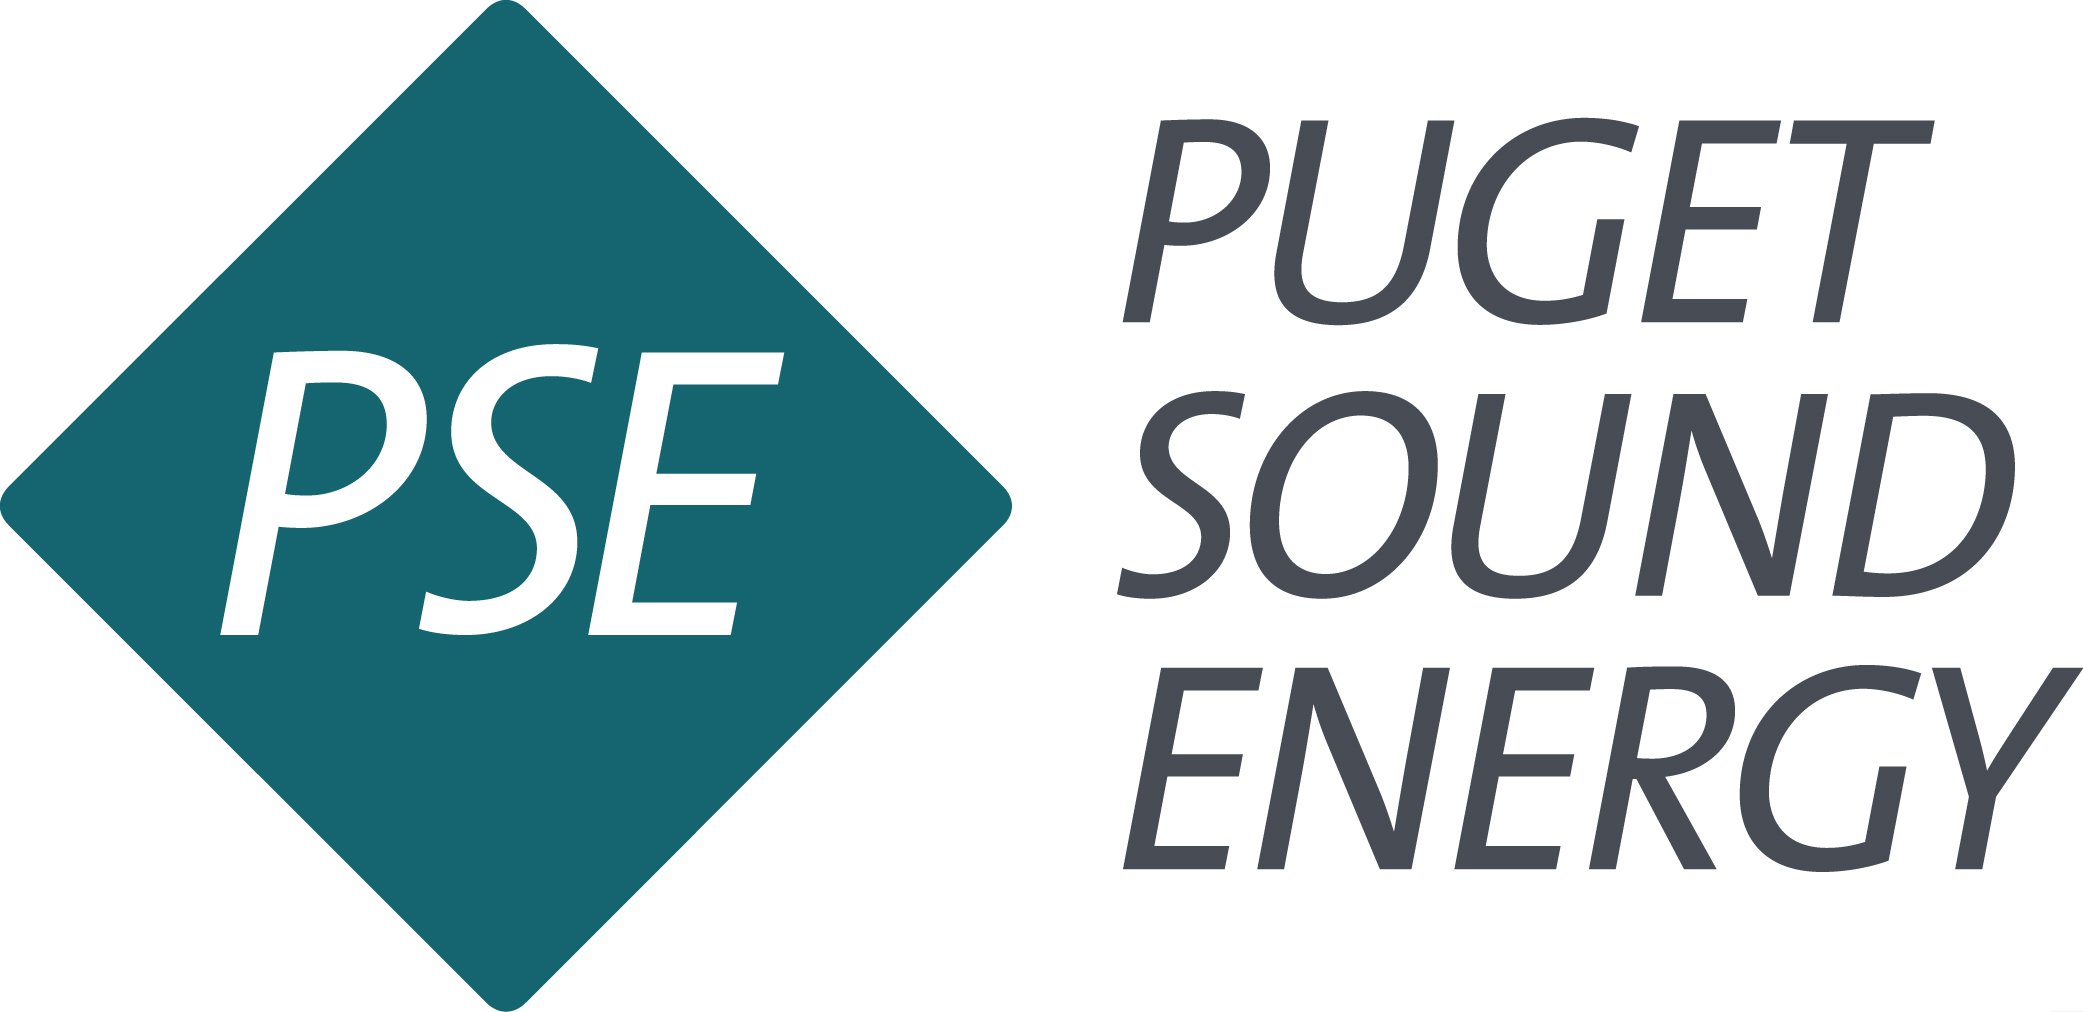 Logotipo de Puget Sound Energy